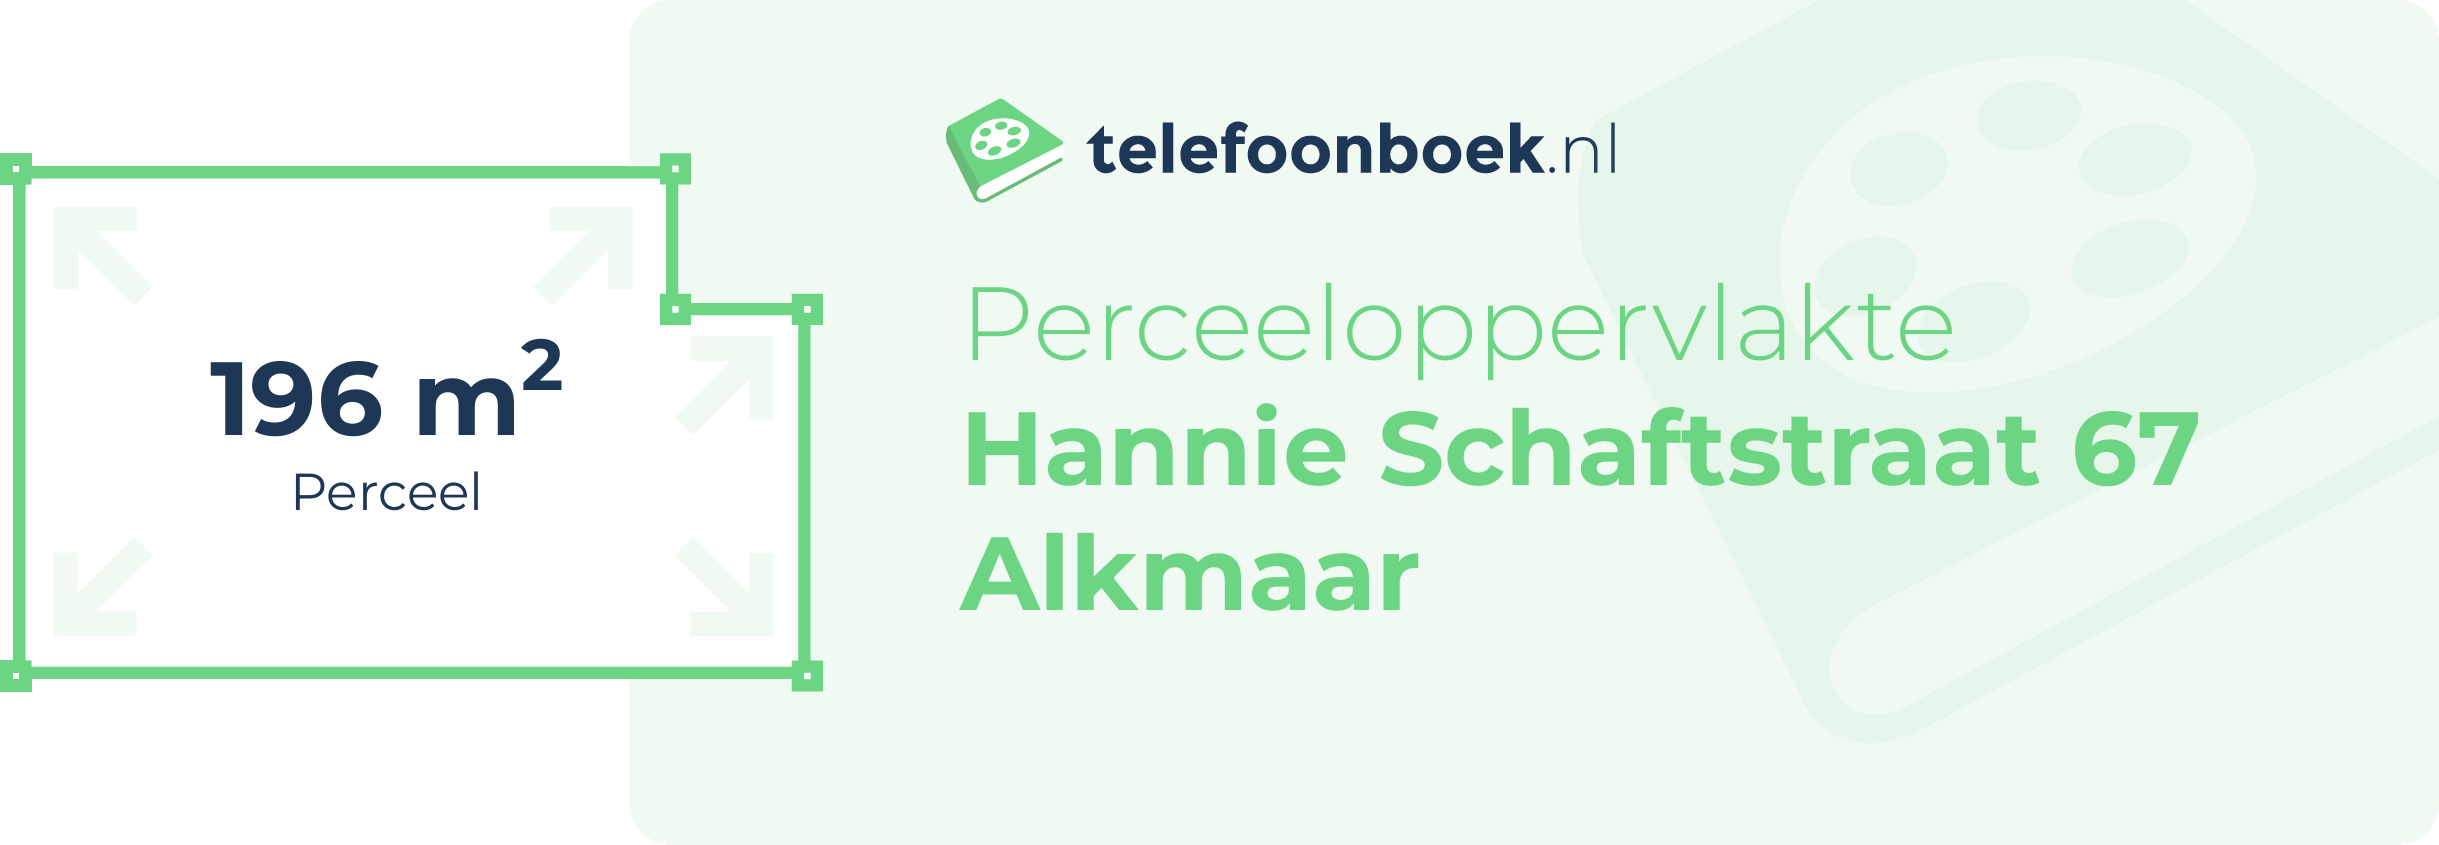 Perceeloppervlakte Hannie Schaftstraat 67 Alkmaar